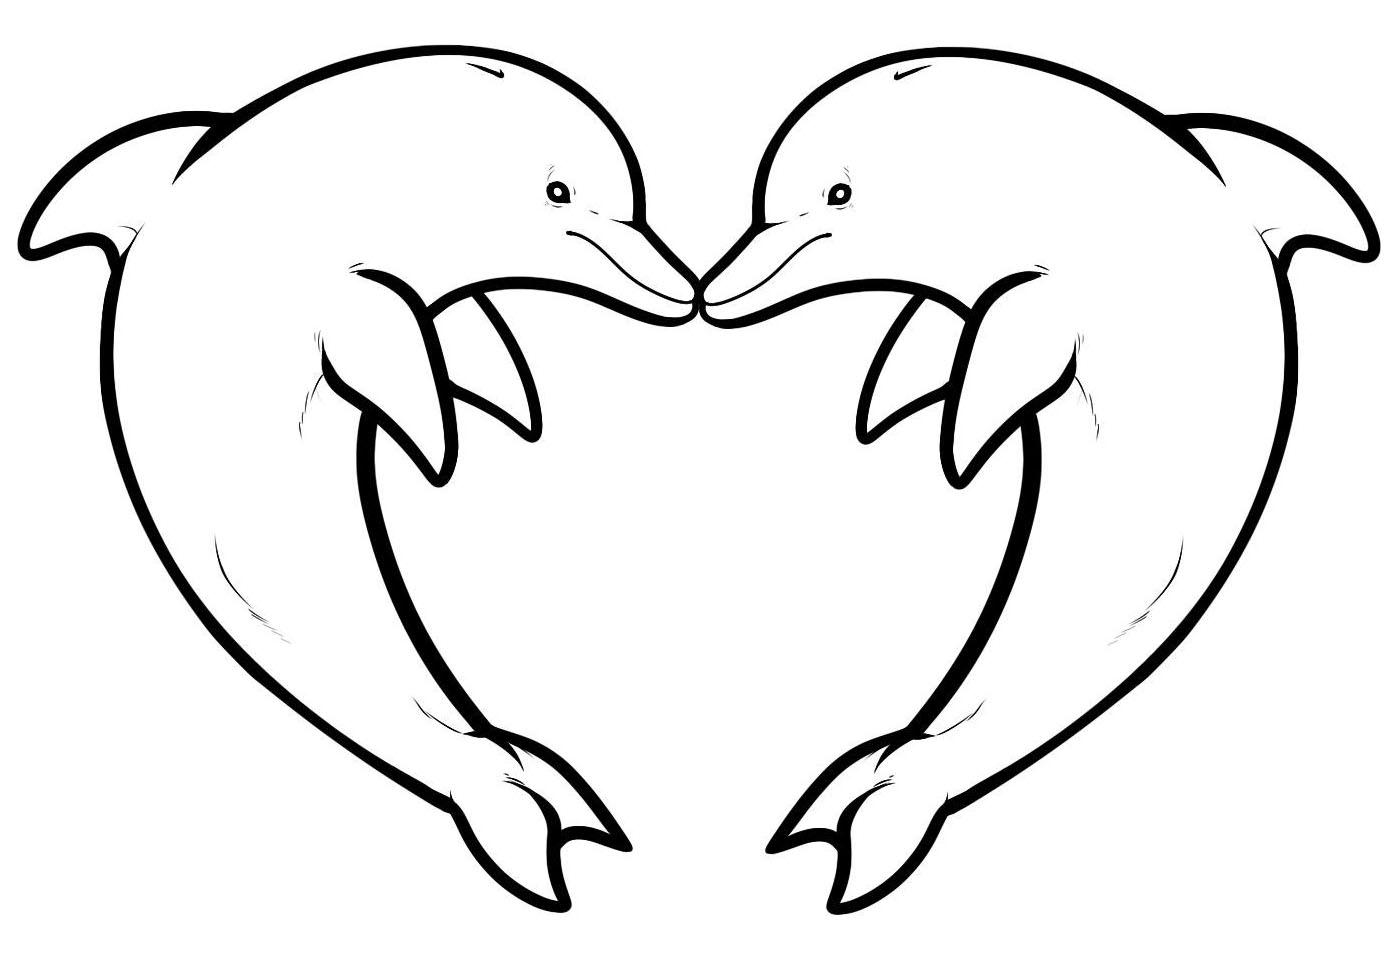 2 dauphins formant un coeur